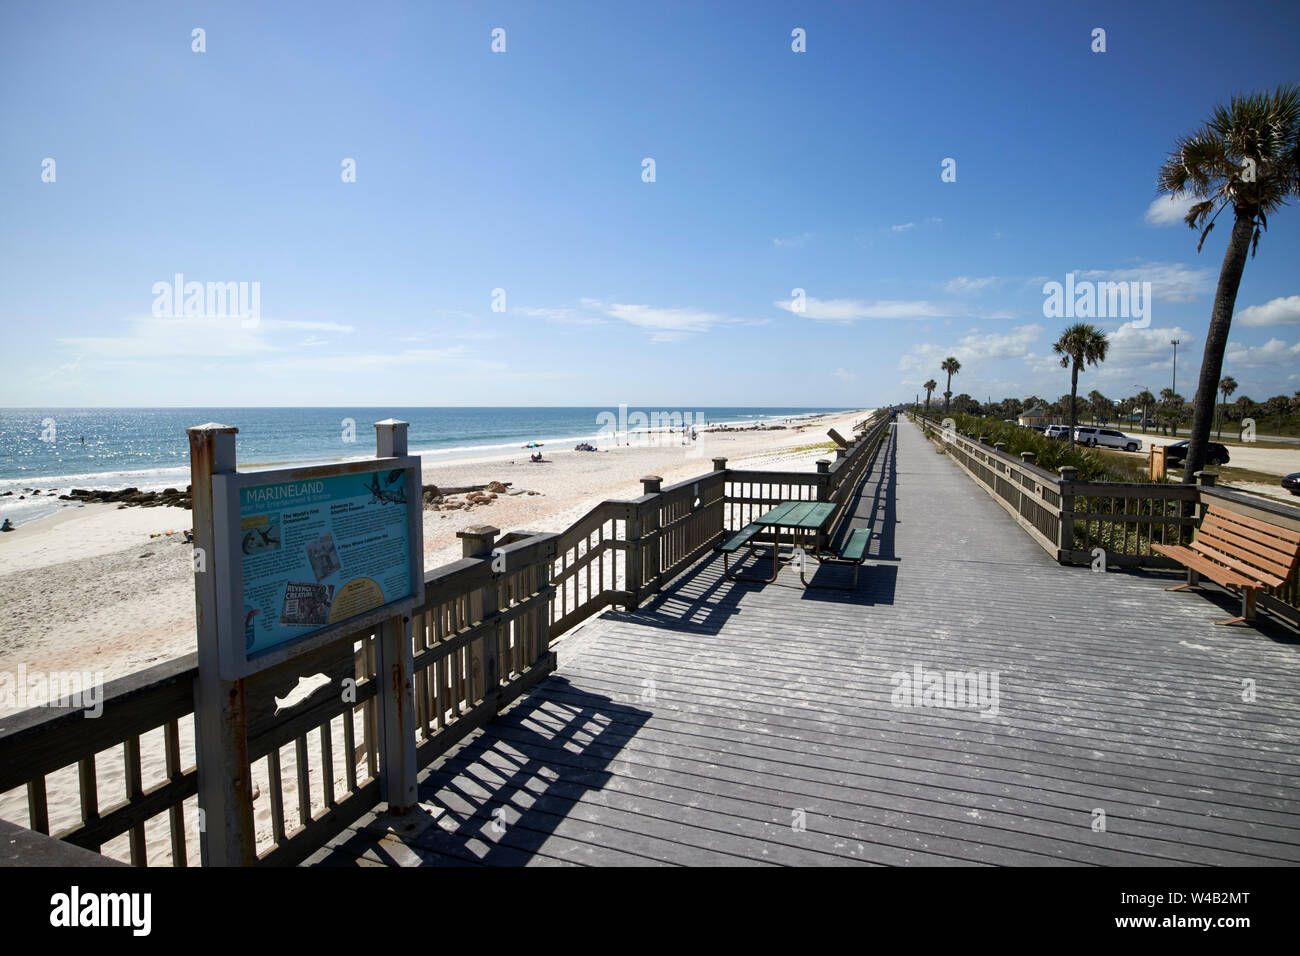 Promenade à la plage de marineland sur la côte atlantique de la Floride US USA Banque D'Images